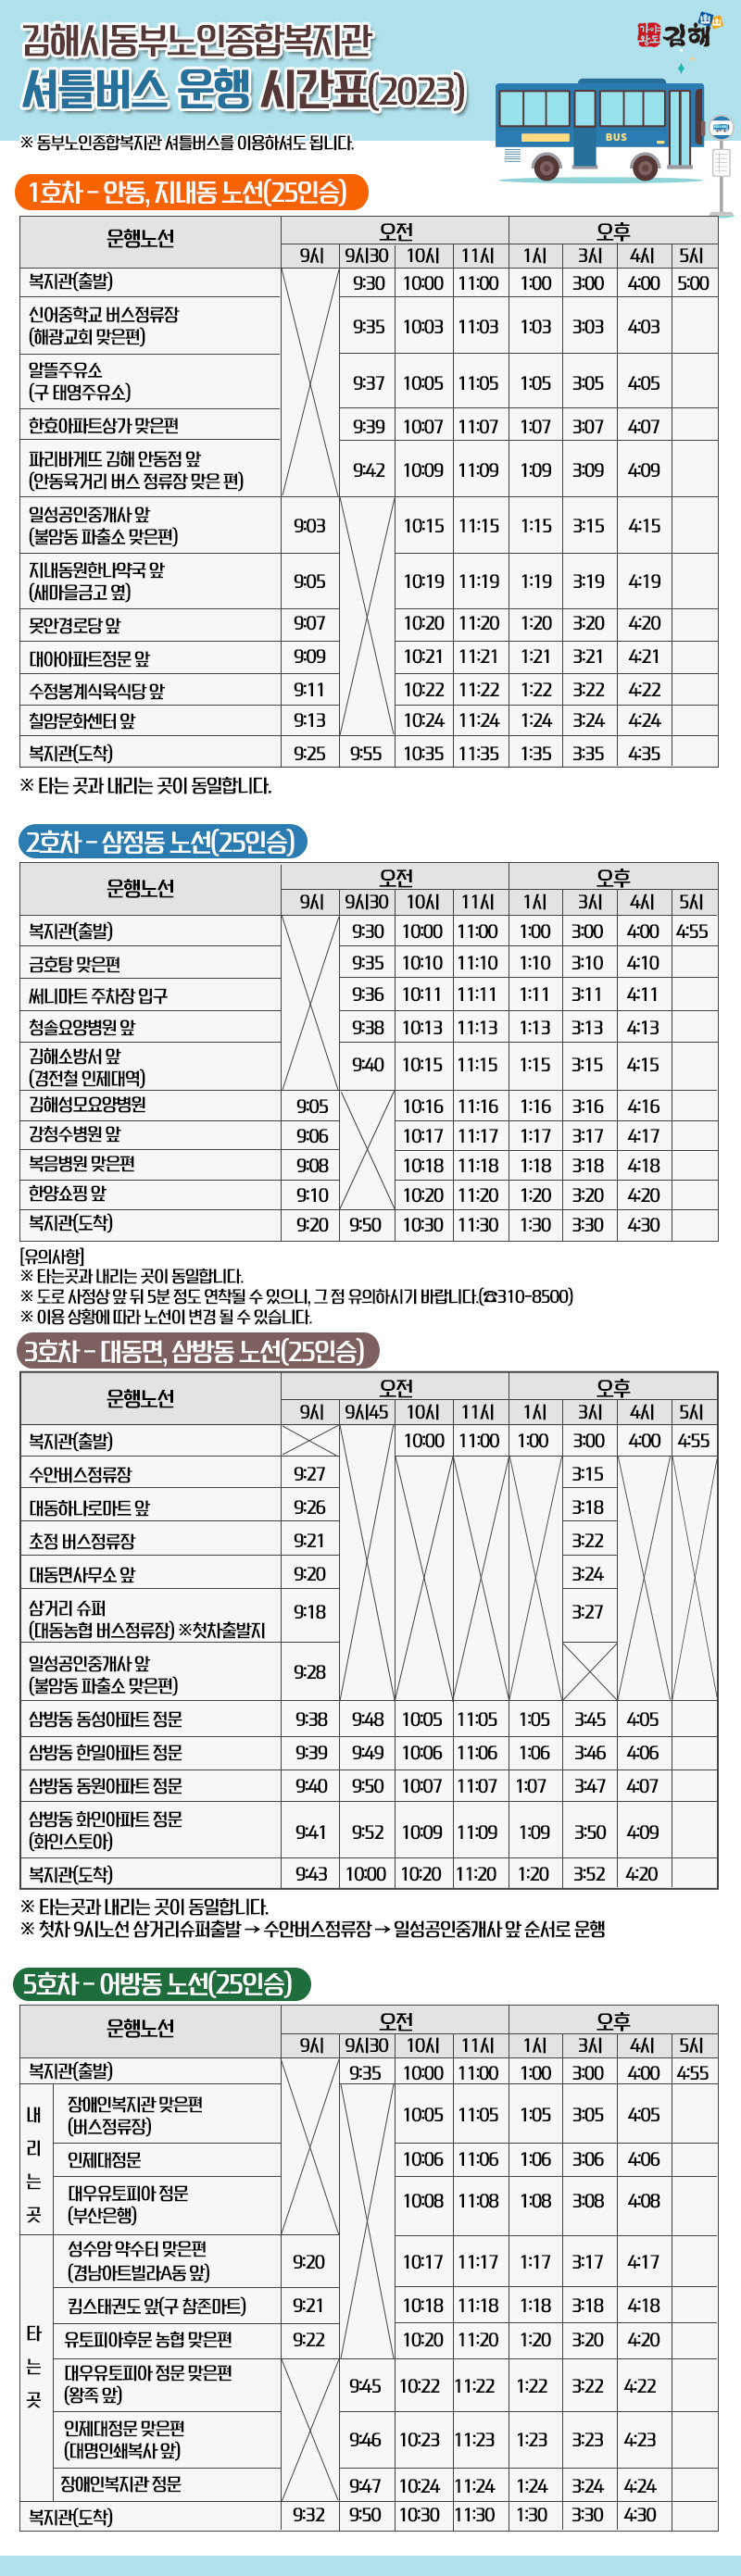 김해시동부노인종합복지관
셔틀버스 운행 시간표(2023)